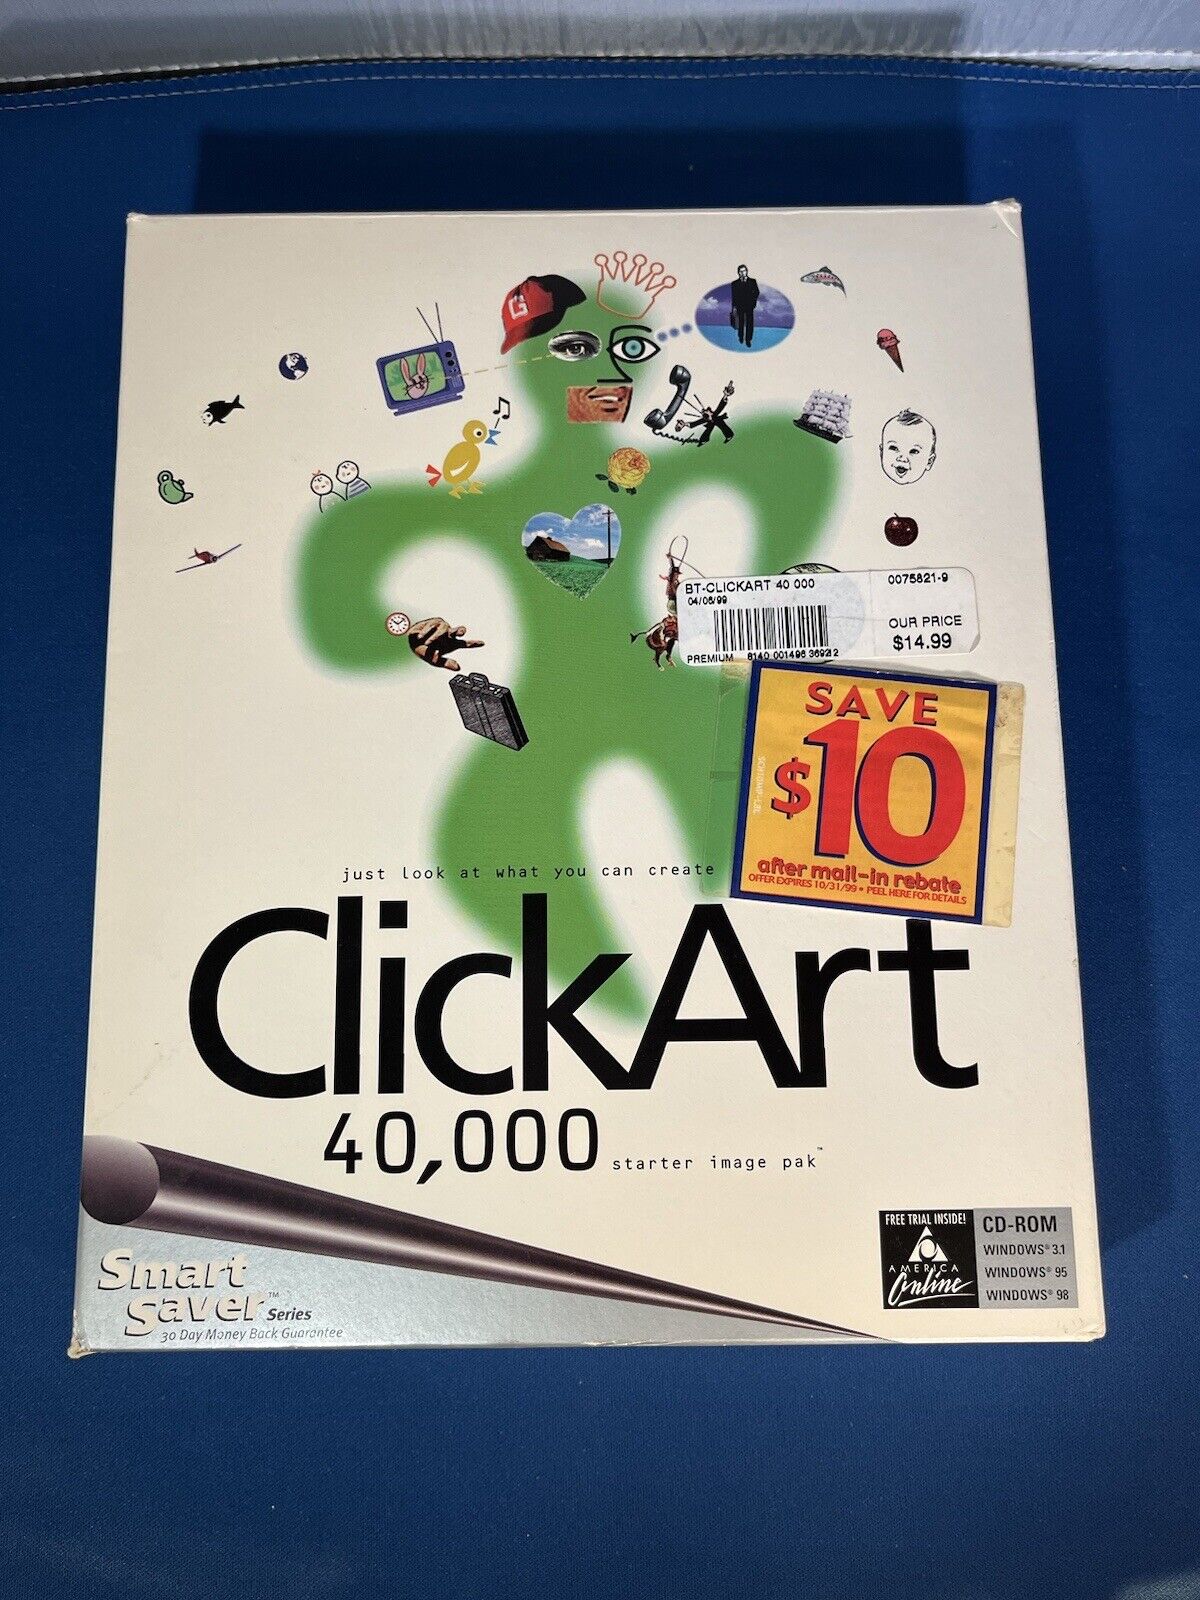 Click Art, 40,000 images, by Smart Saver, starter image pack, CD format